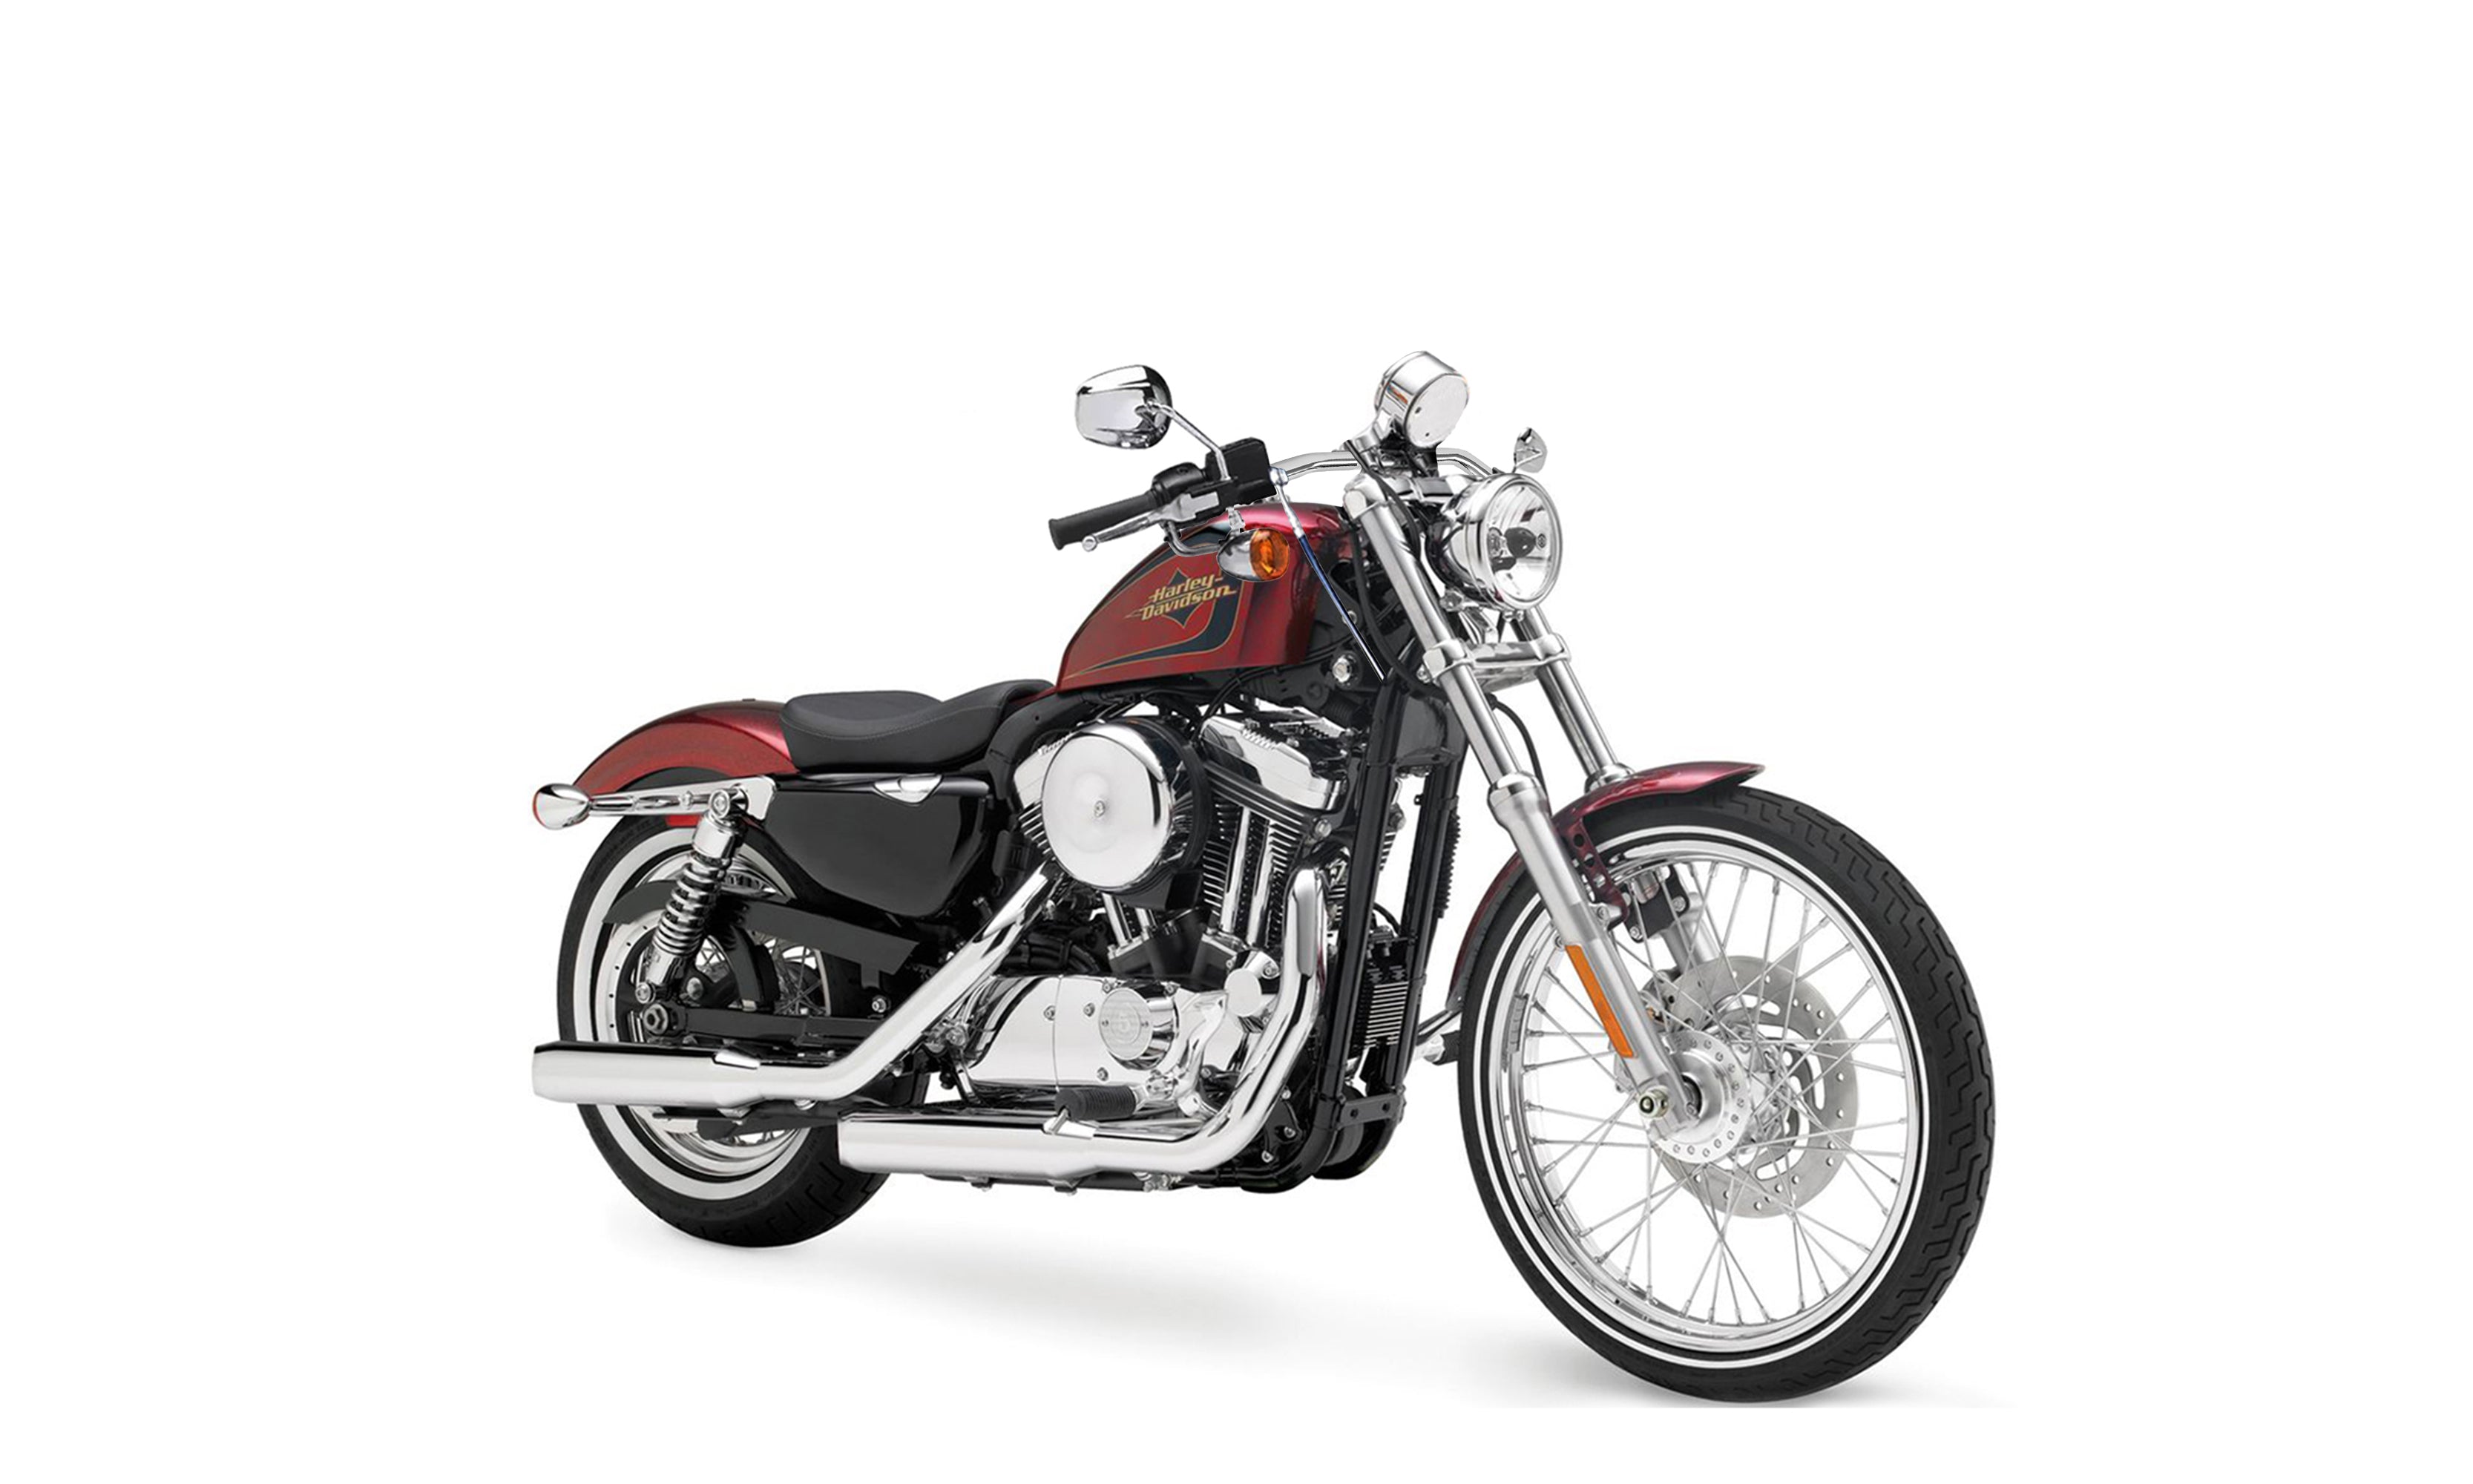 Viking Iron Born Drag Handlebar For Harley Sportster Seventy Two Chrome on Bike @expand